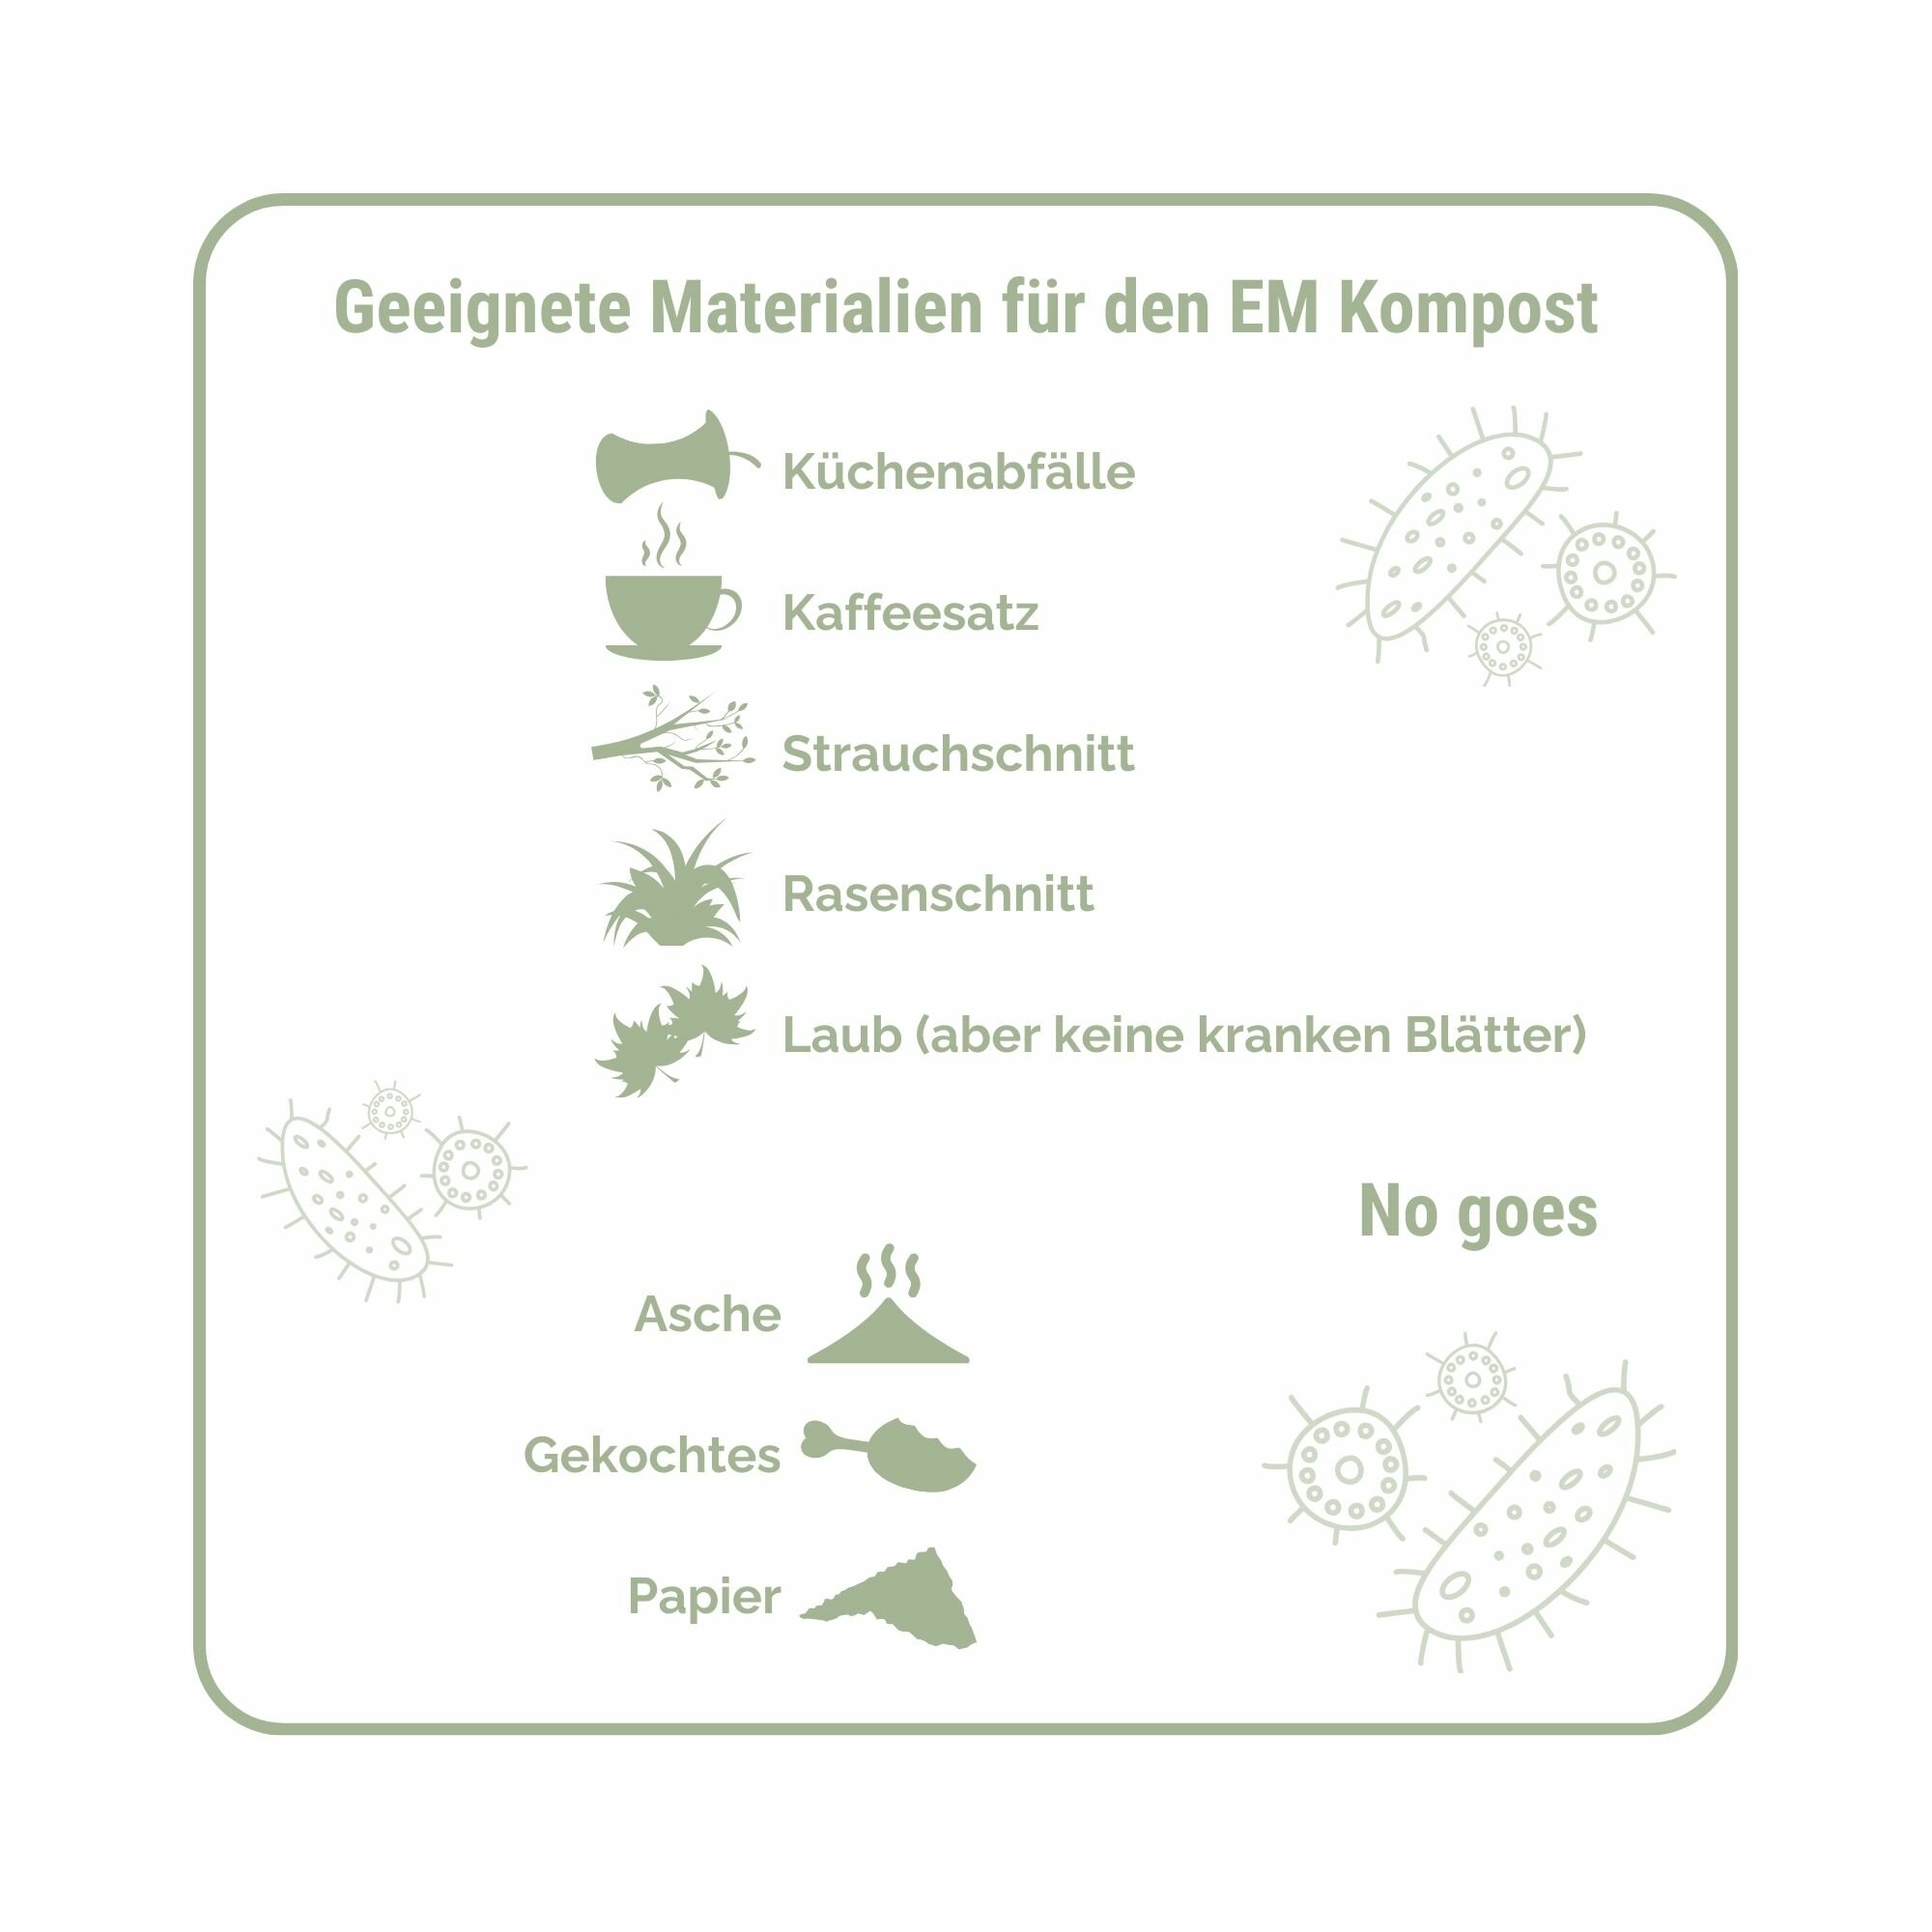 geeignete Materialien für EM Kompost